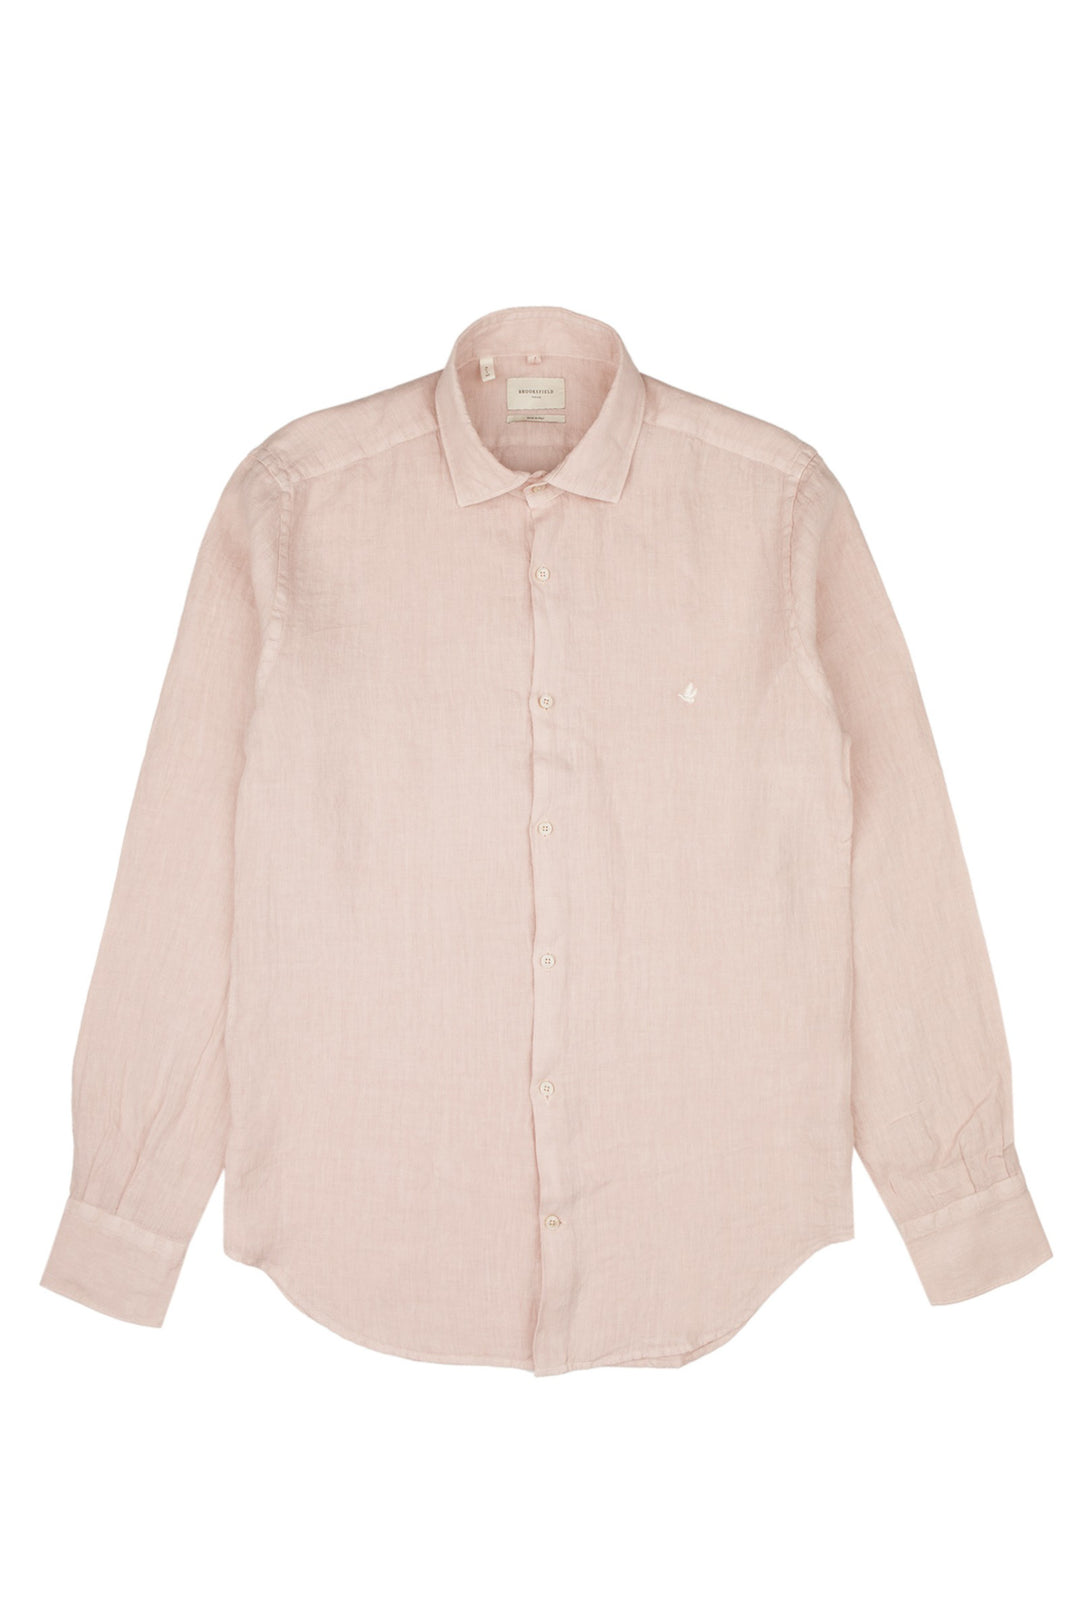 Brooksfield Camicia slim rosa in lino con collo francese - Mancinelli 1954